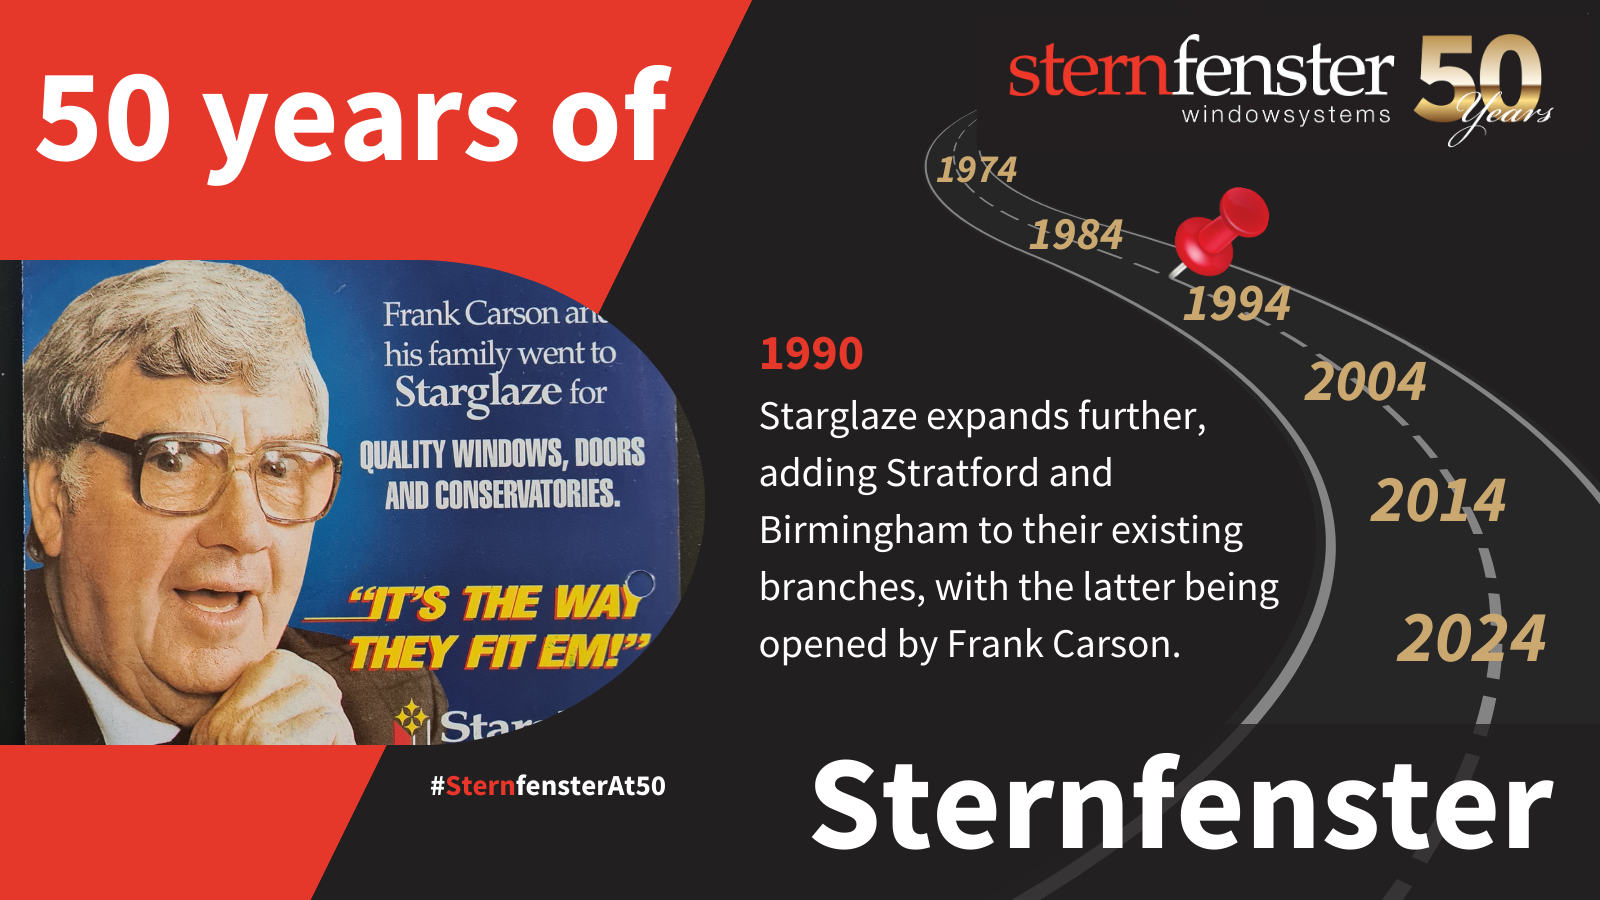 sternfenster history timeline